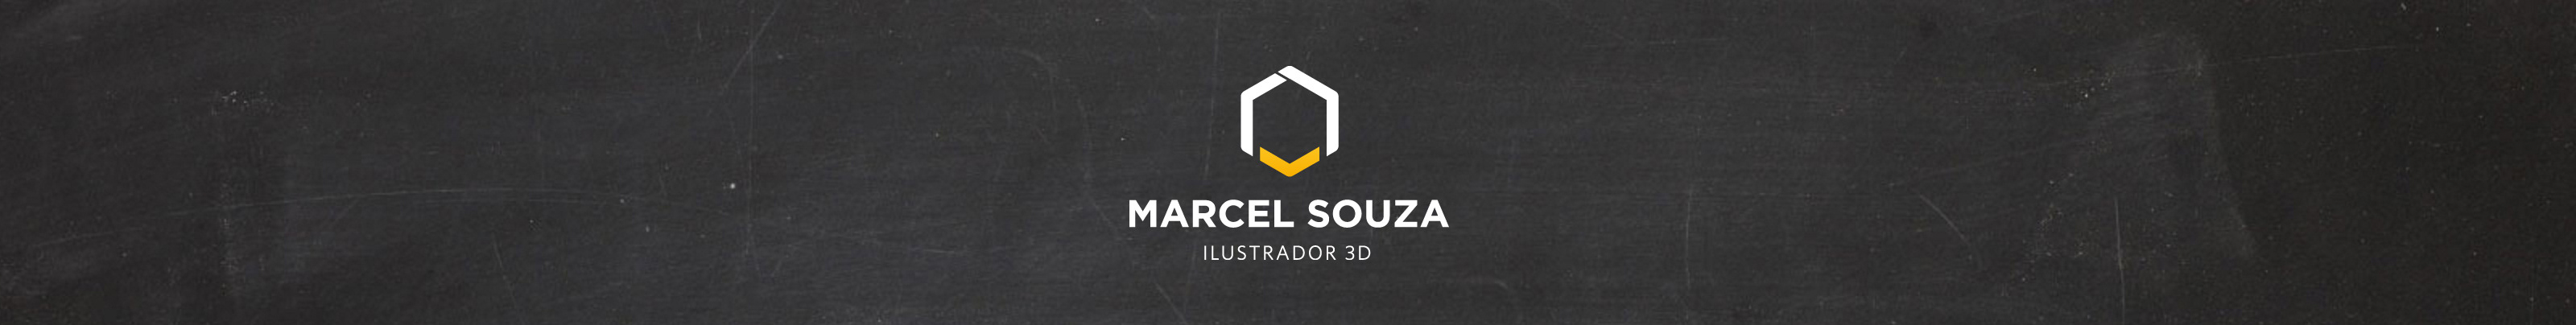 Marcel Souzas profilbanner